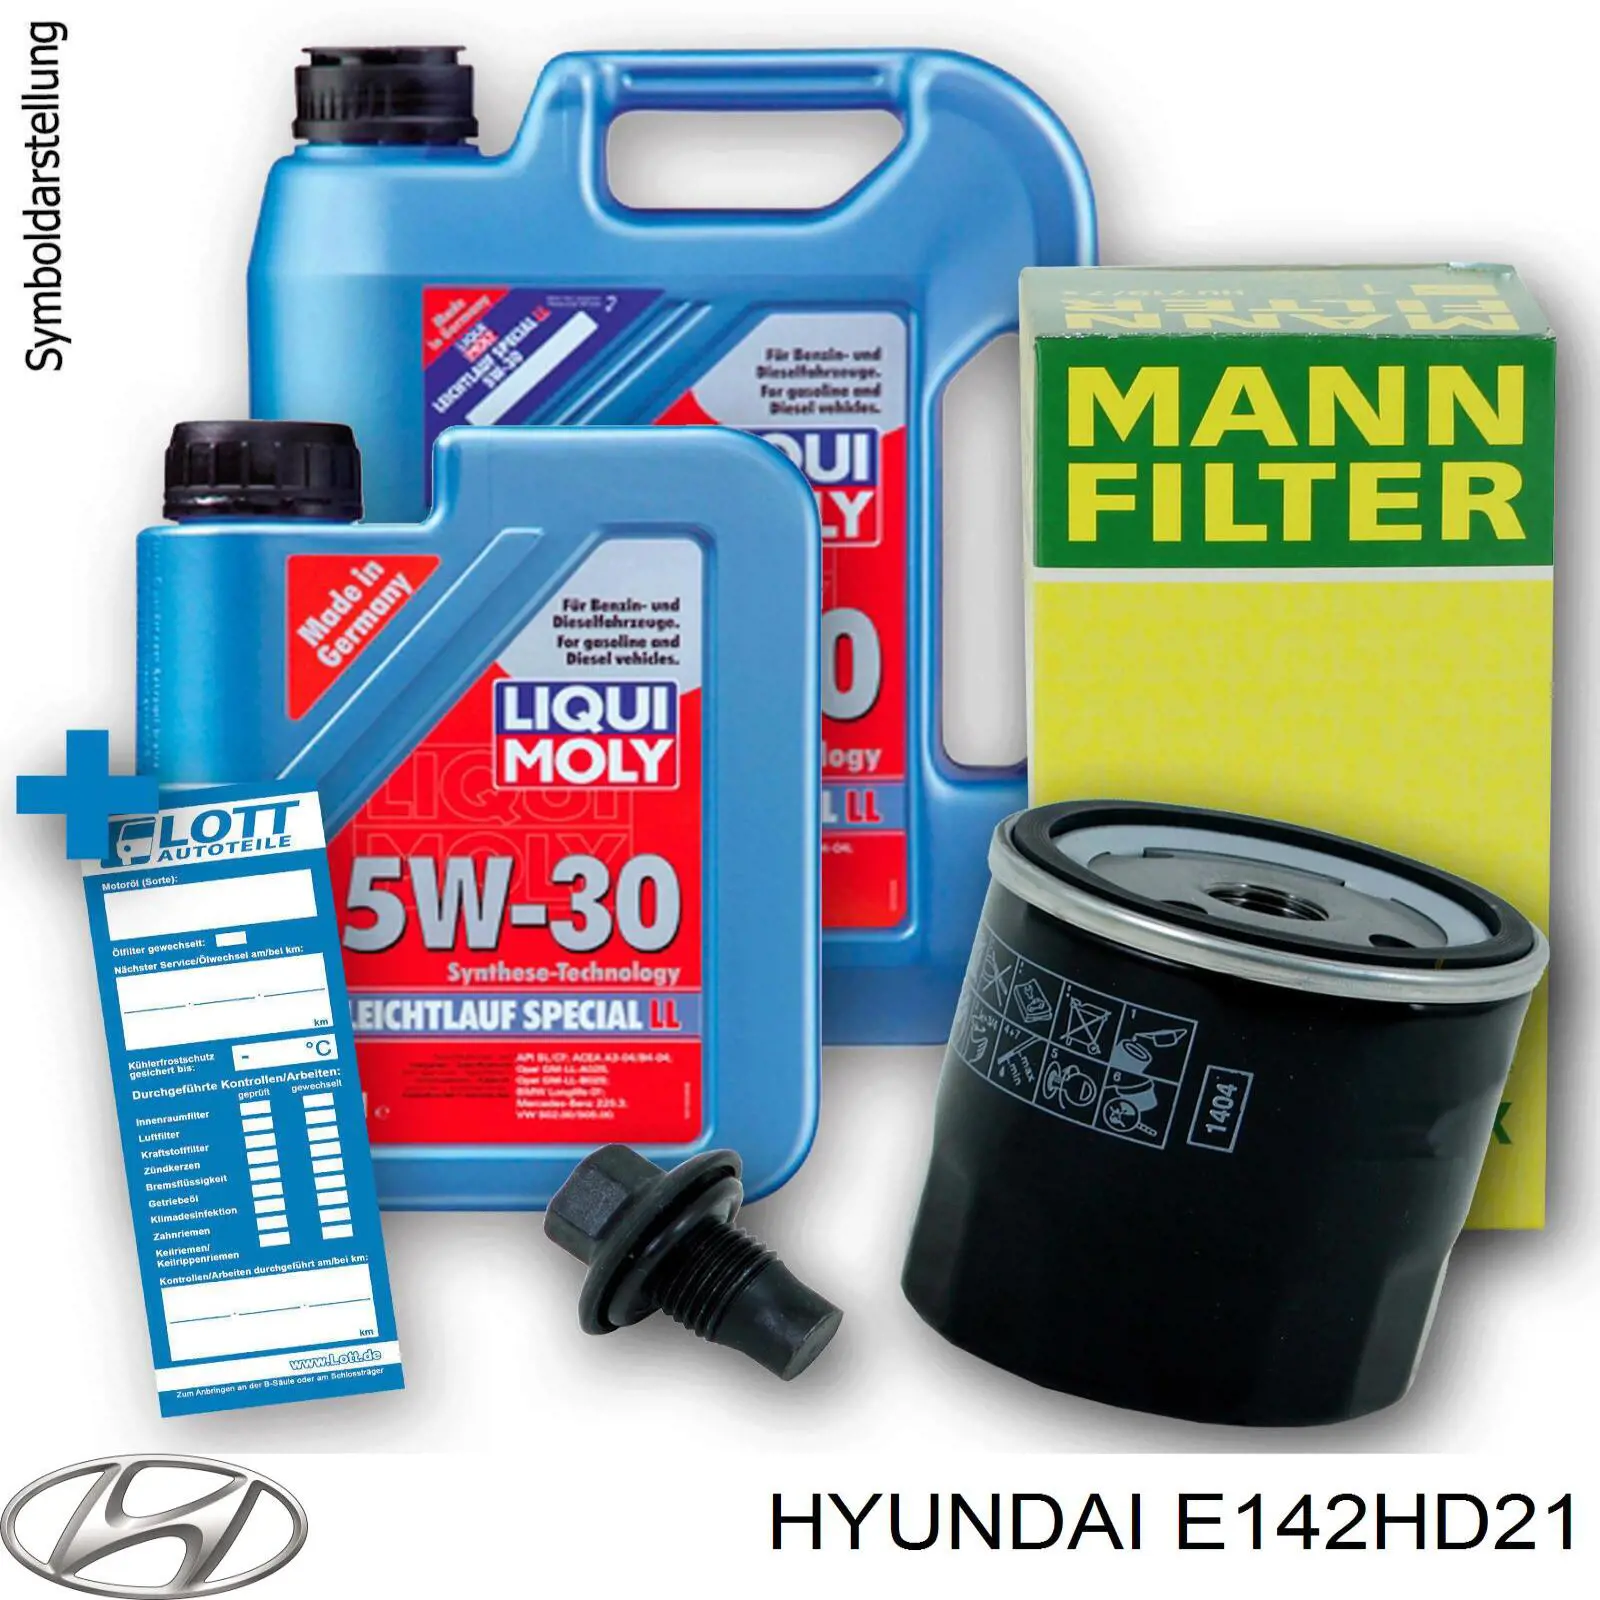 E142HD21 Hyundai/Kia filtro de aceite